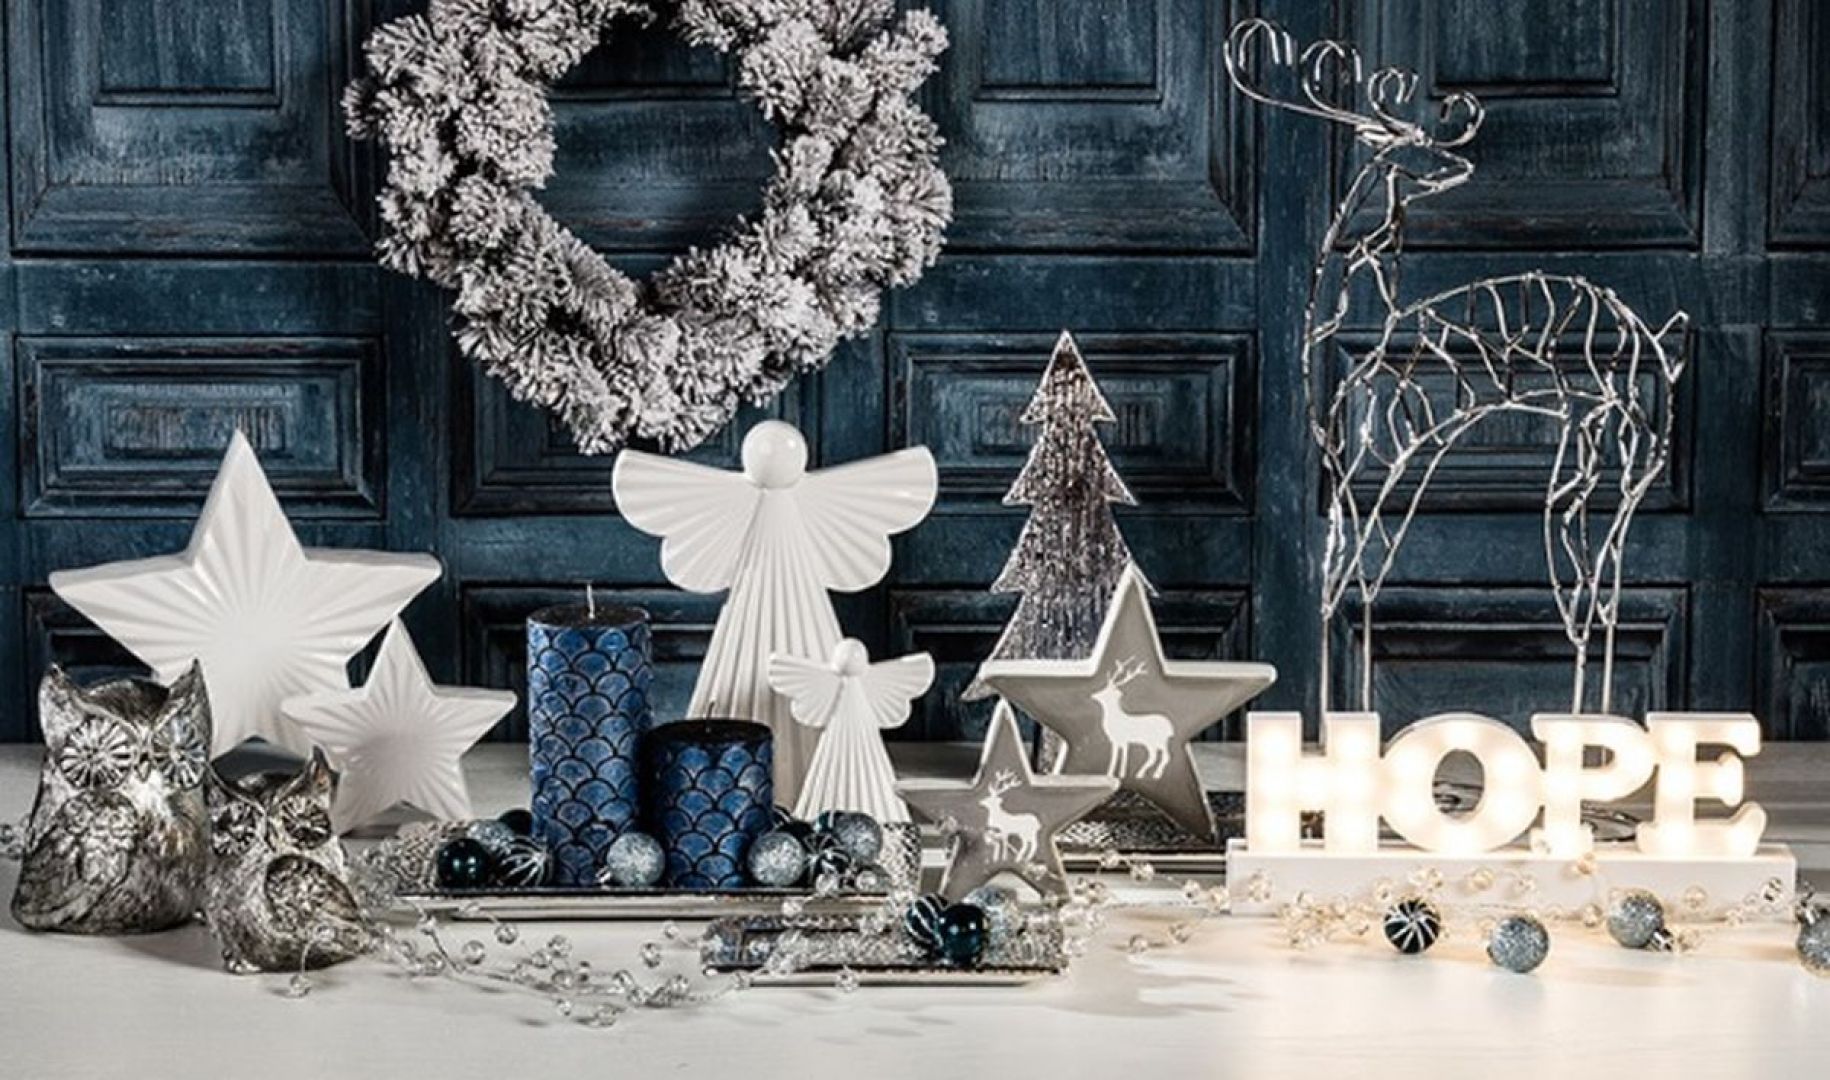 Białe świąteczne dekoracje doskonale komponują się na przykład z granatem. Fot. Agata